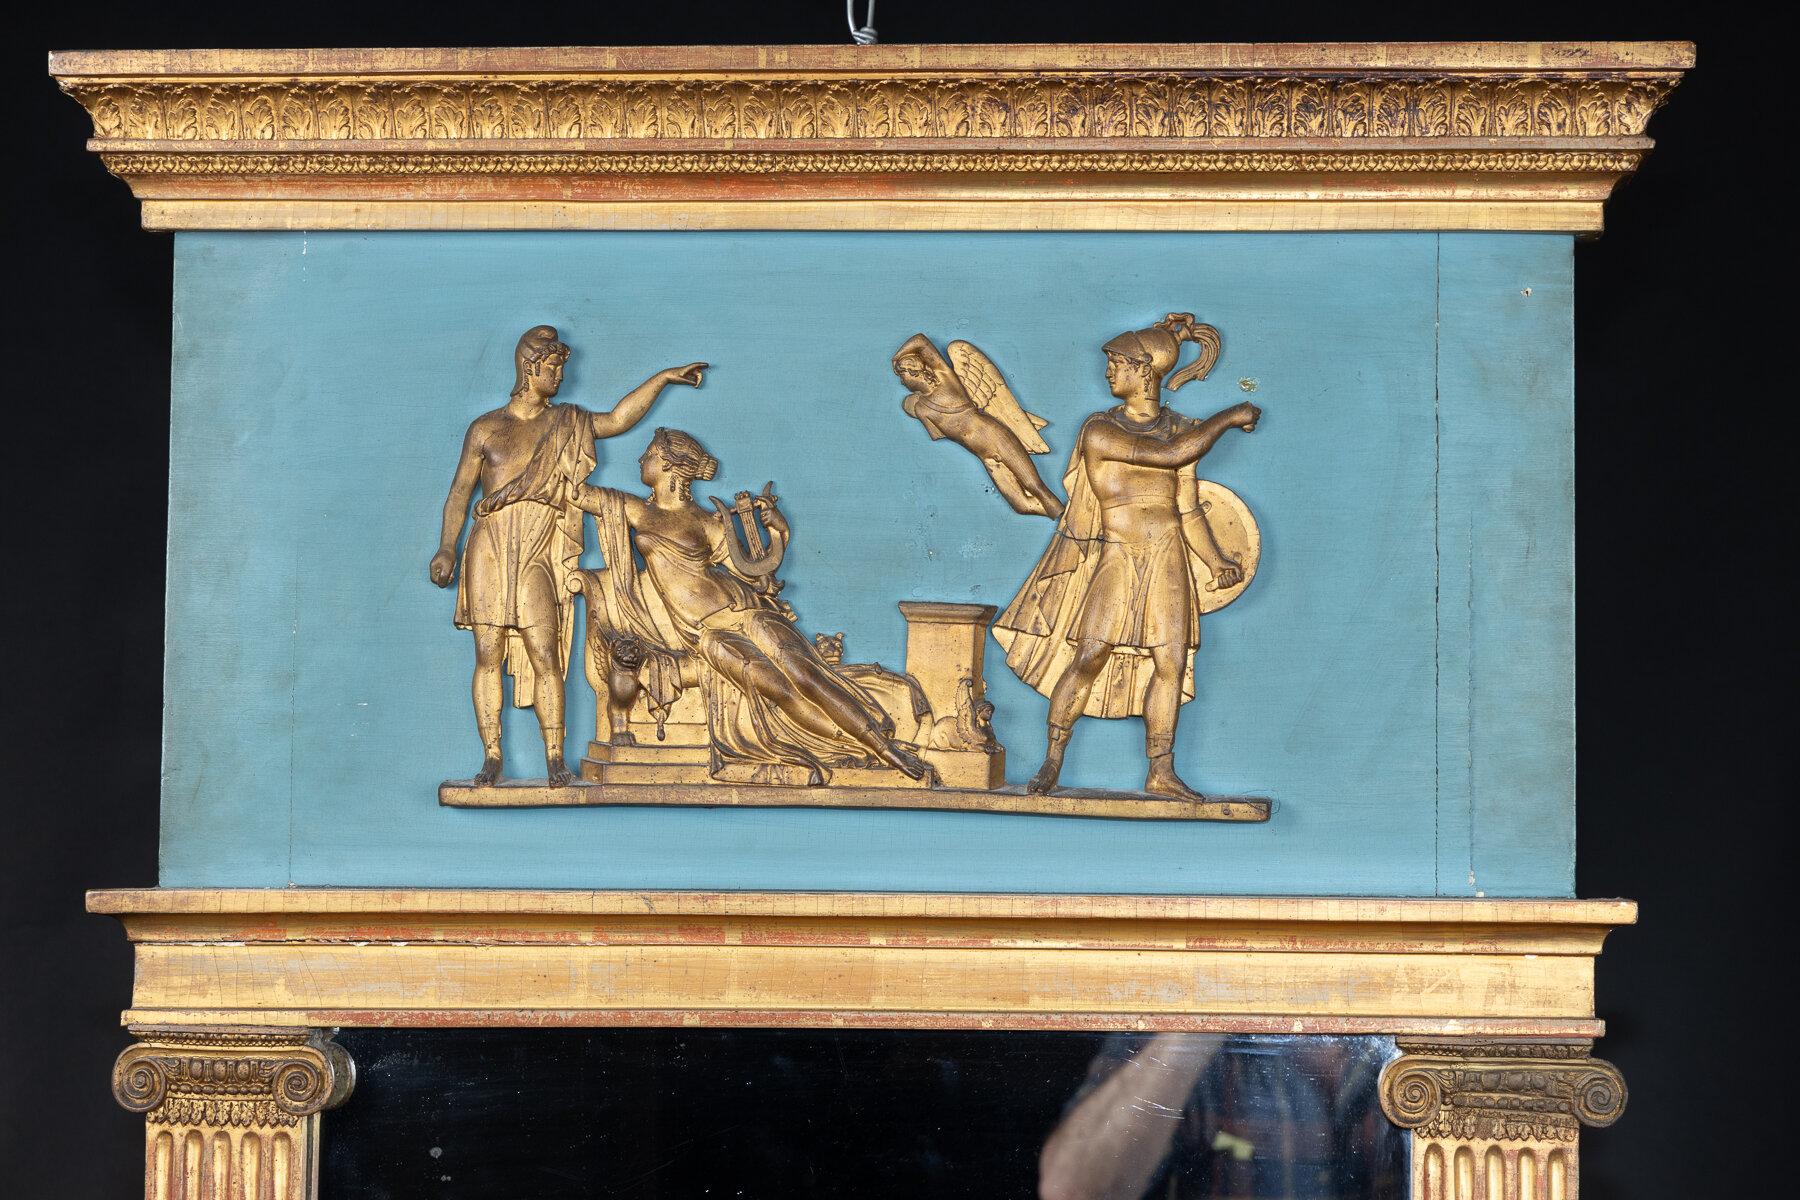 Trumeau français du XIXe siècle, sculpté, peint et doré, de style Empire ou néo-classique, avec un fond bleu et des figures allégoriques dorées. Les personnages reposent sur un fronton supérieur composé de feuilles sculptées et dorées. Un pilastre